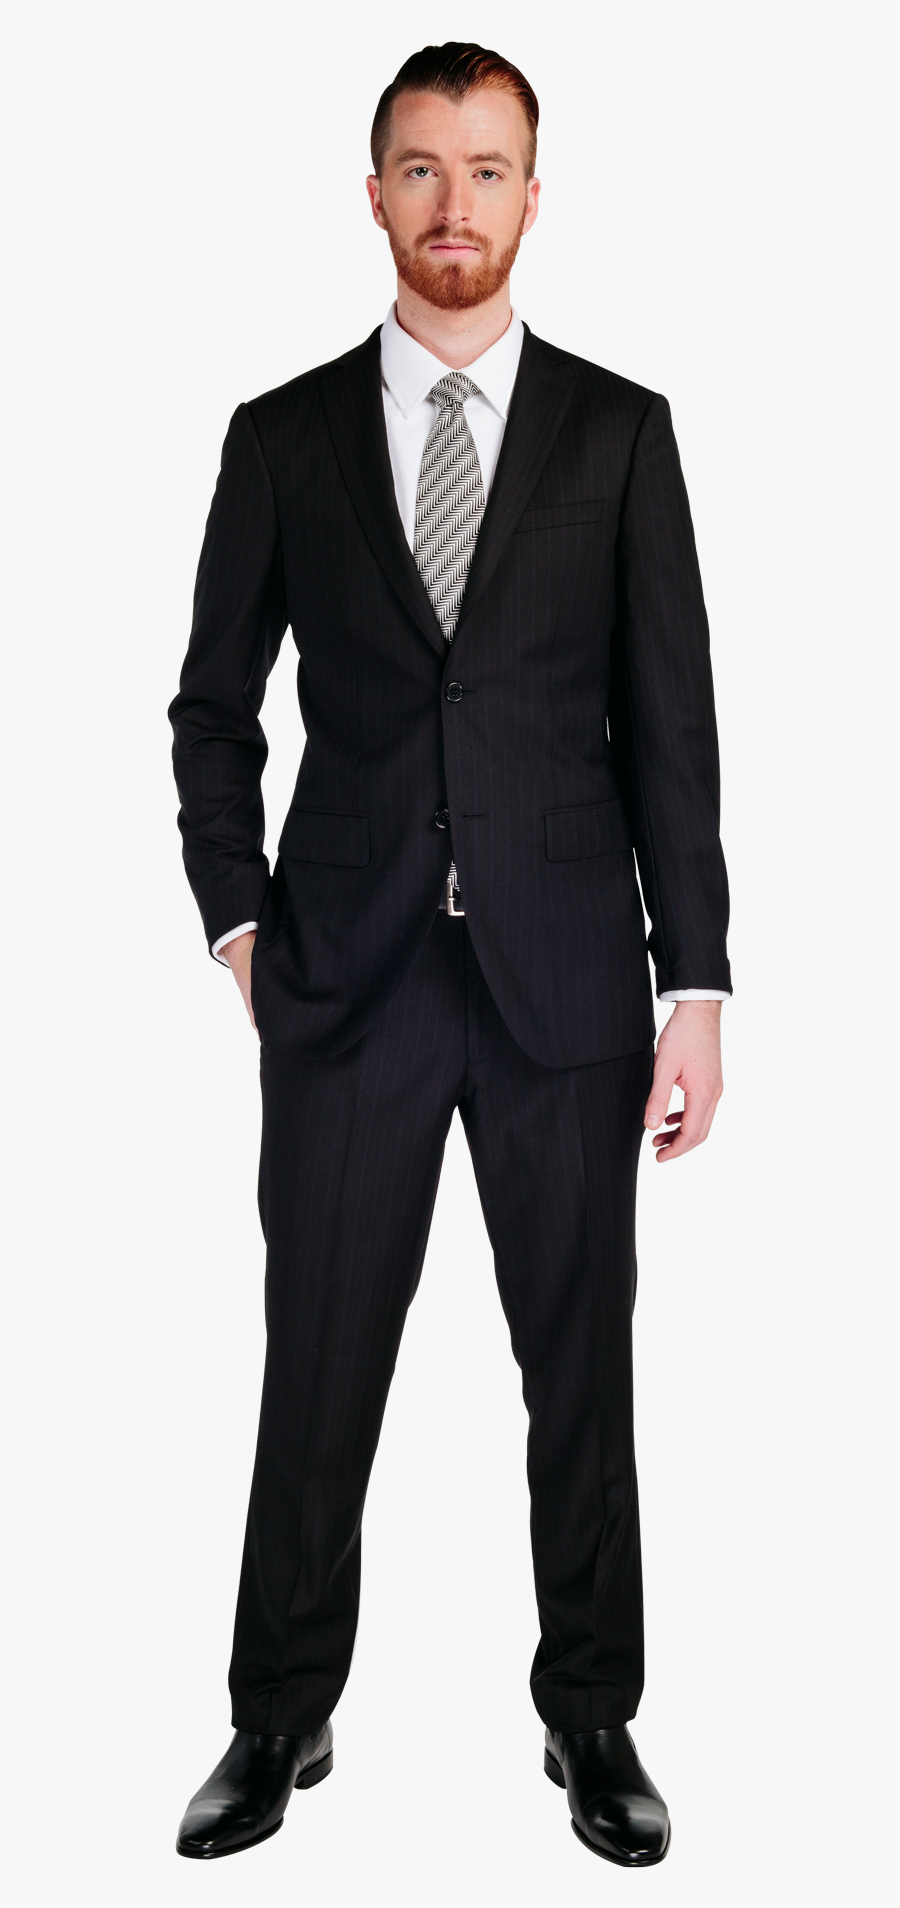 Men Suit Png - Man In Suit Png, Transparent Clipart